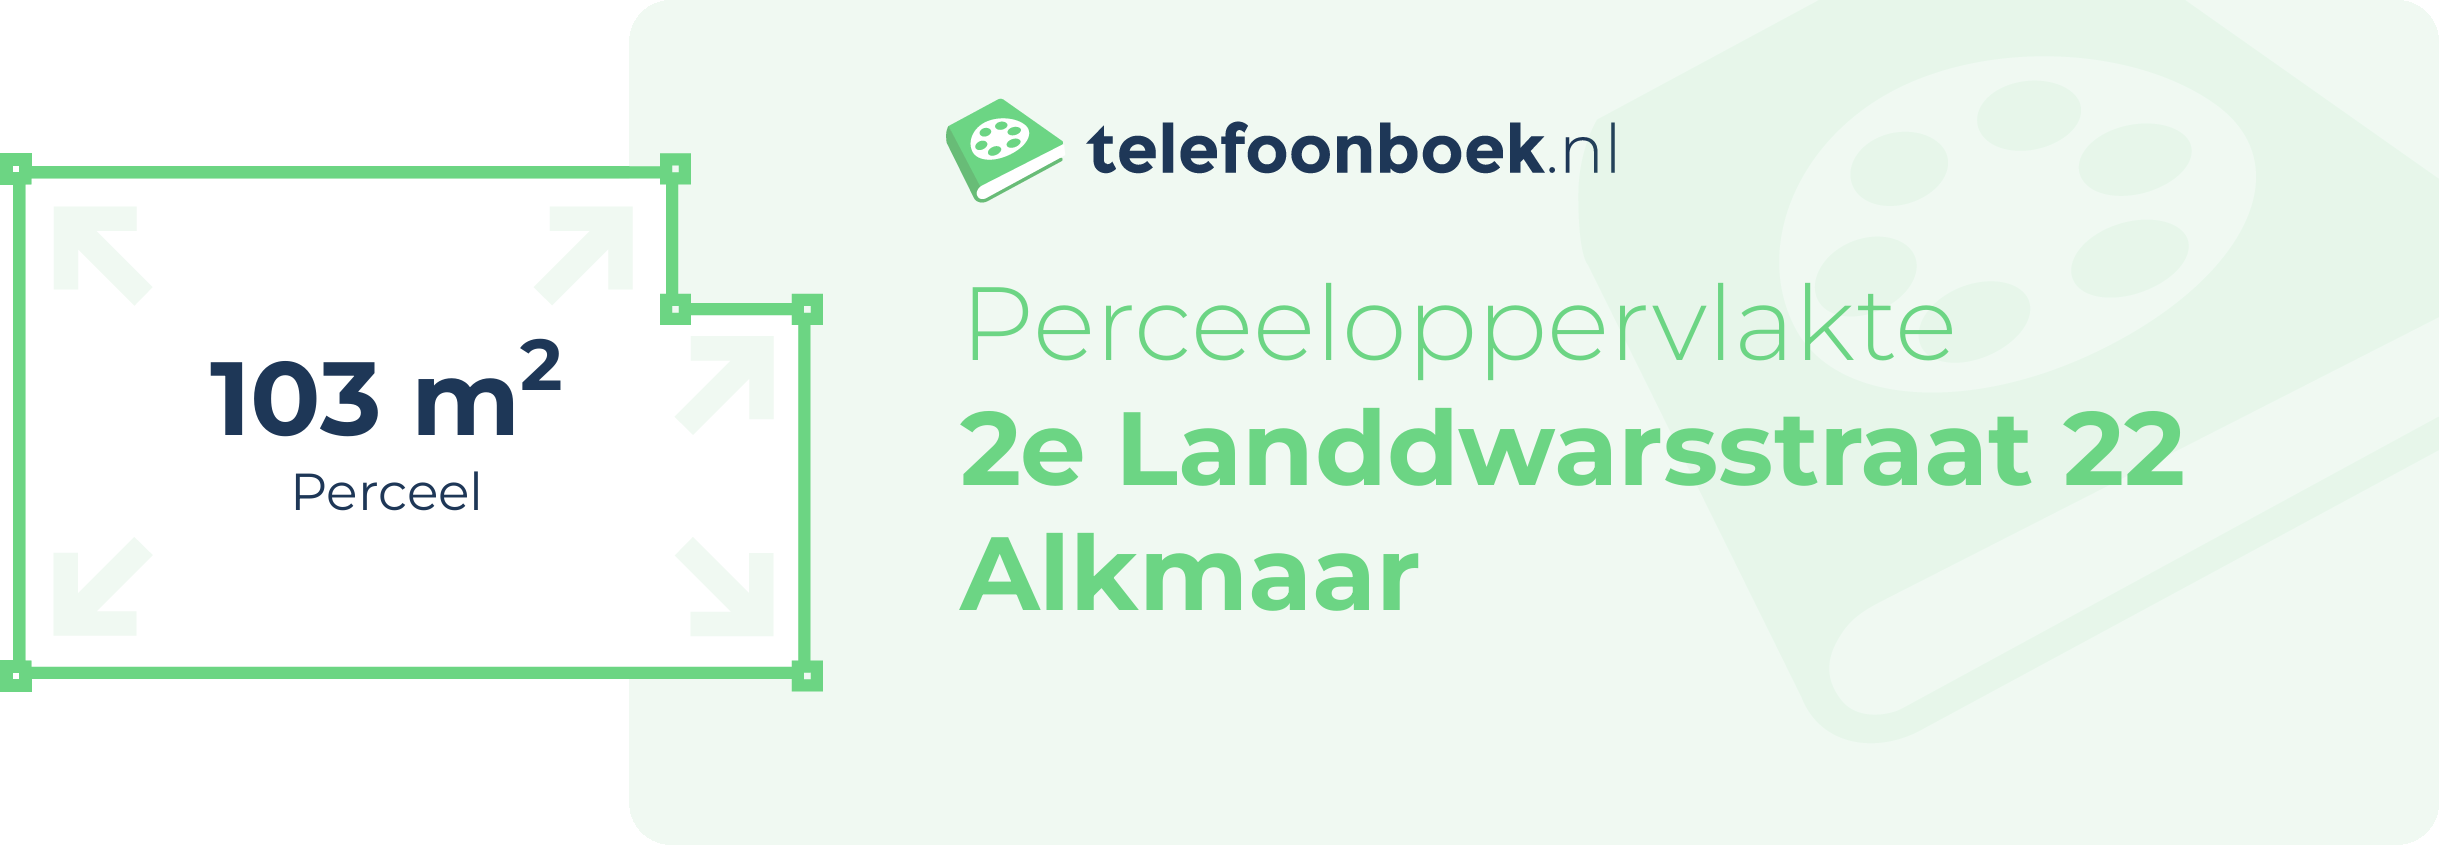 Perceeloppervlakte 2e Landdwarsstraat 22 Alkmaar